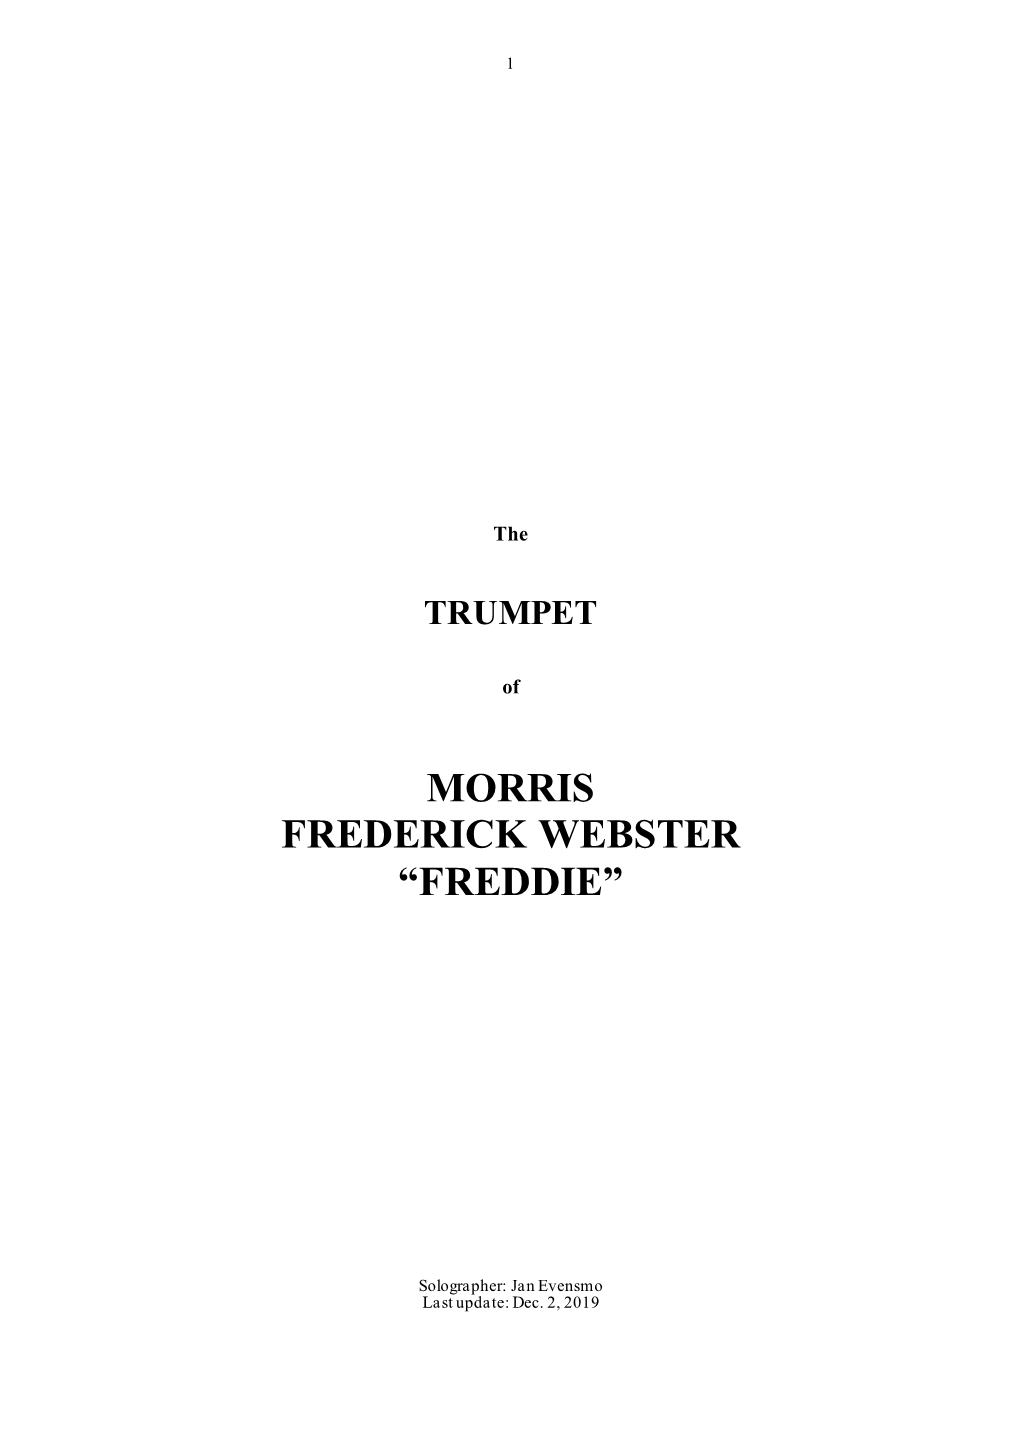 Morris Frederick Webster “Freddie”